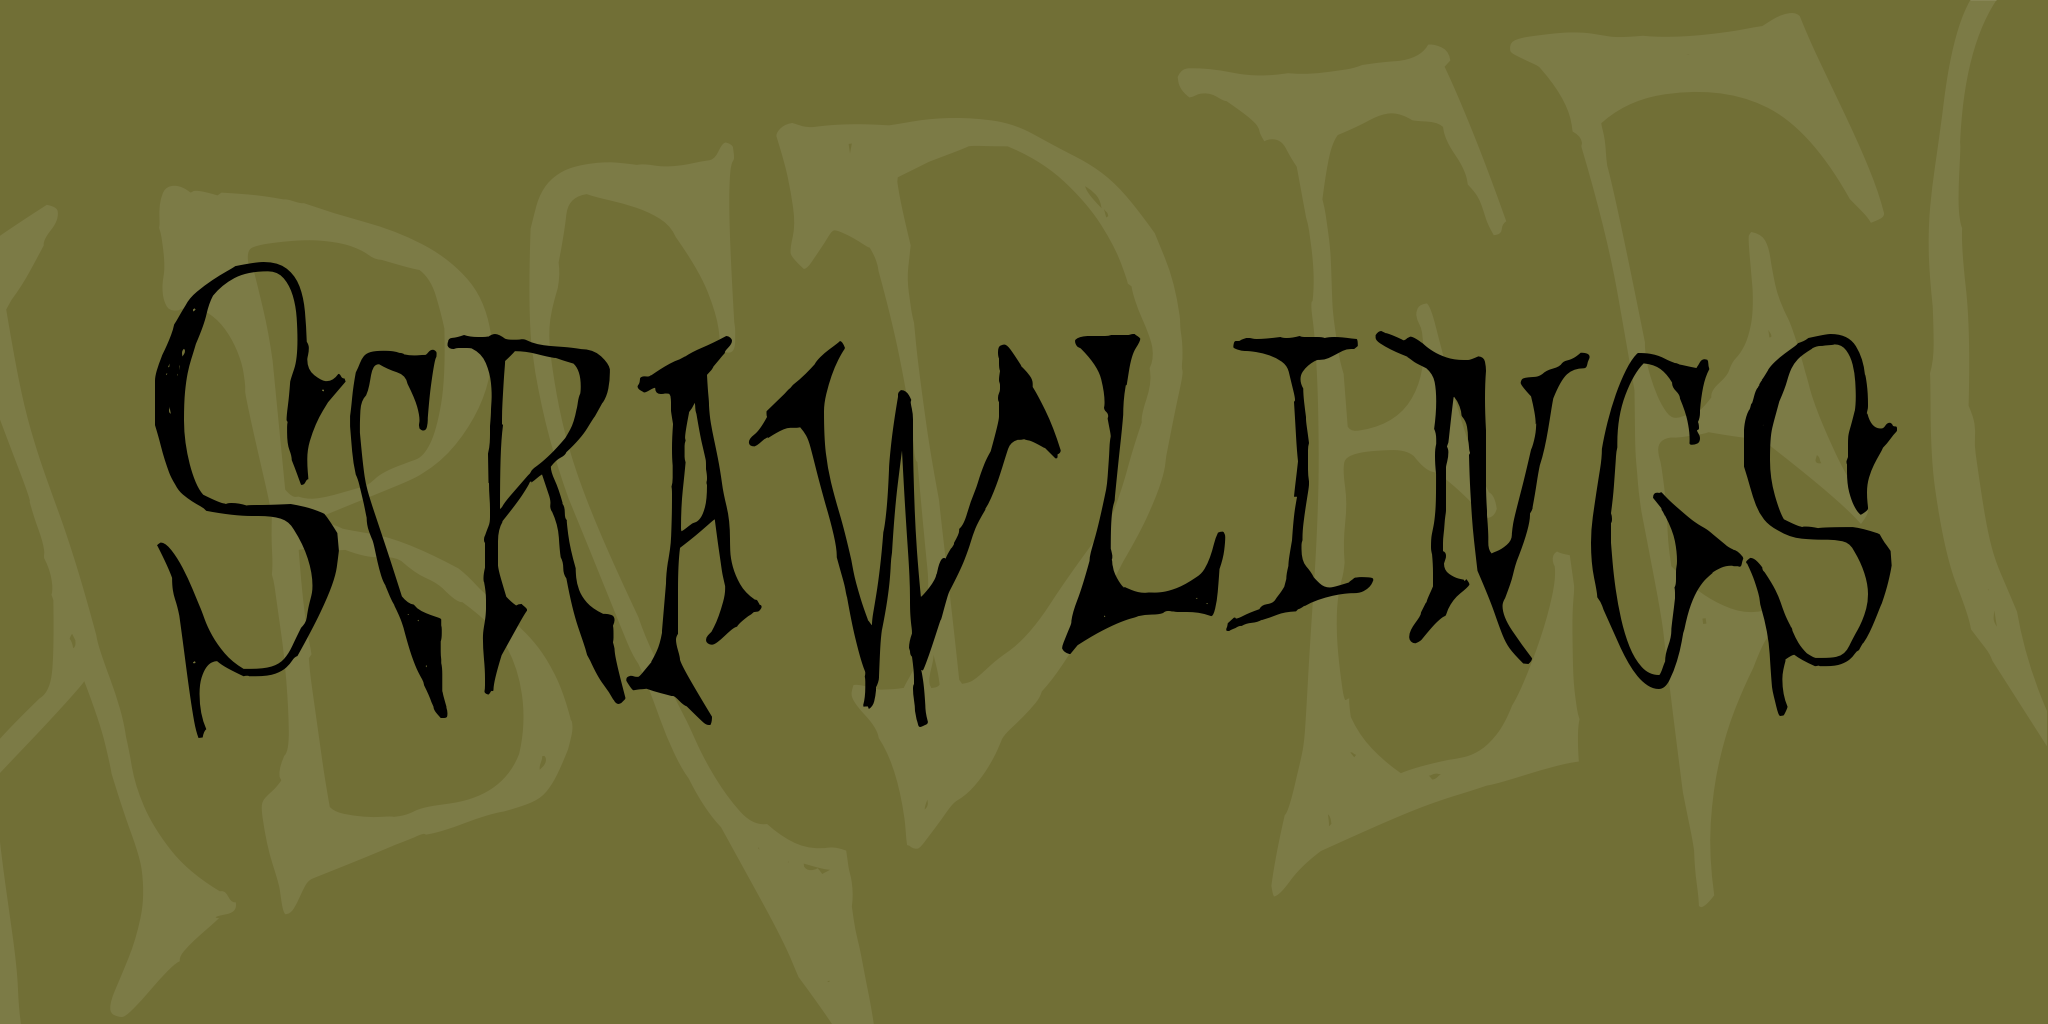 Scrawlings